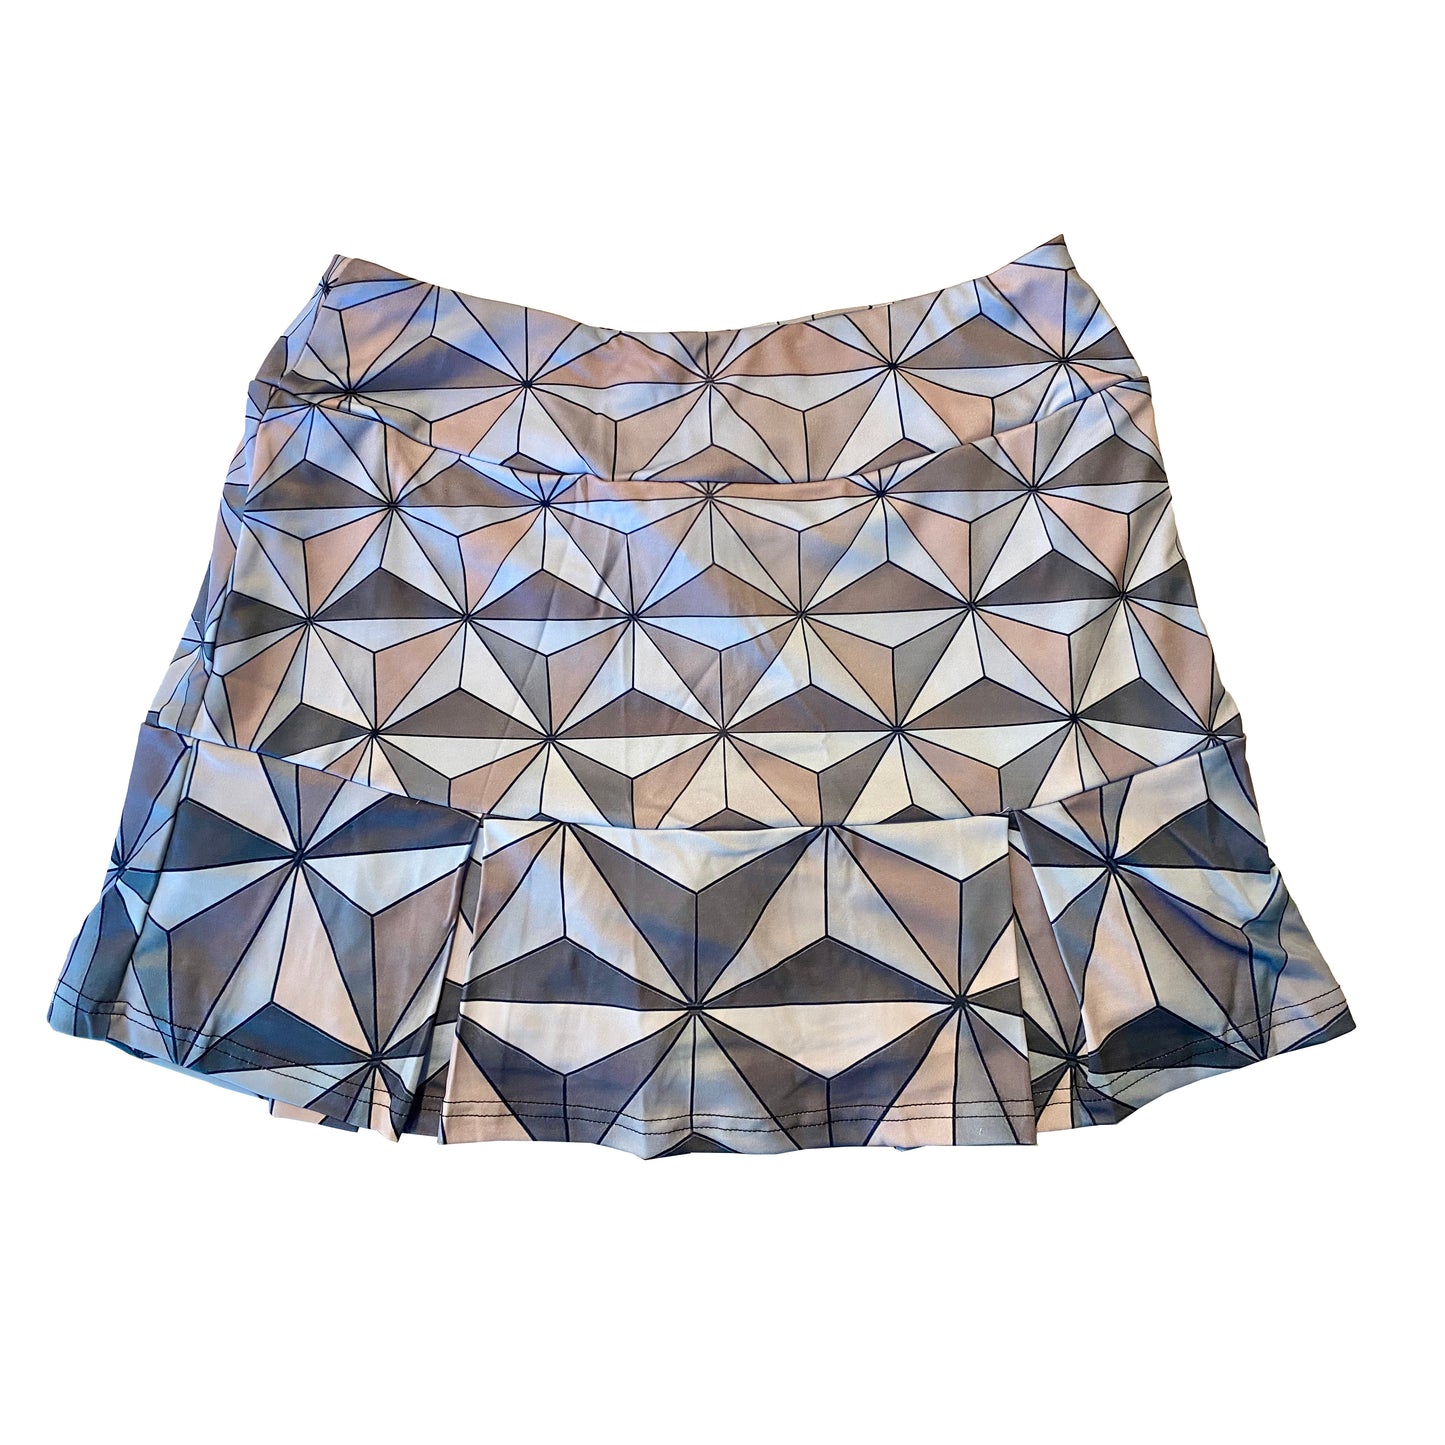 Spaceship Earth Inspired Sport Skirt